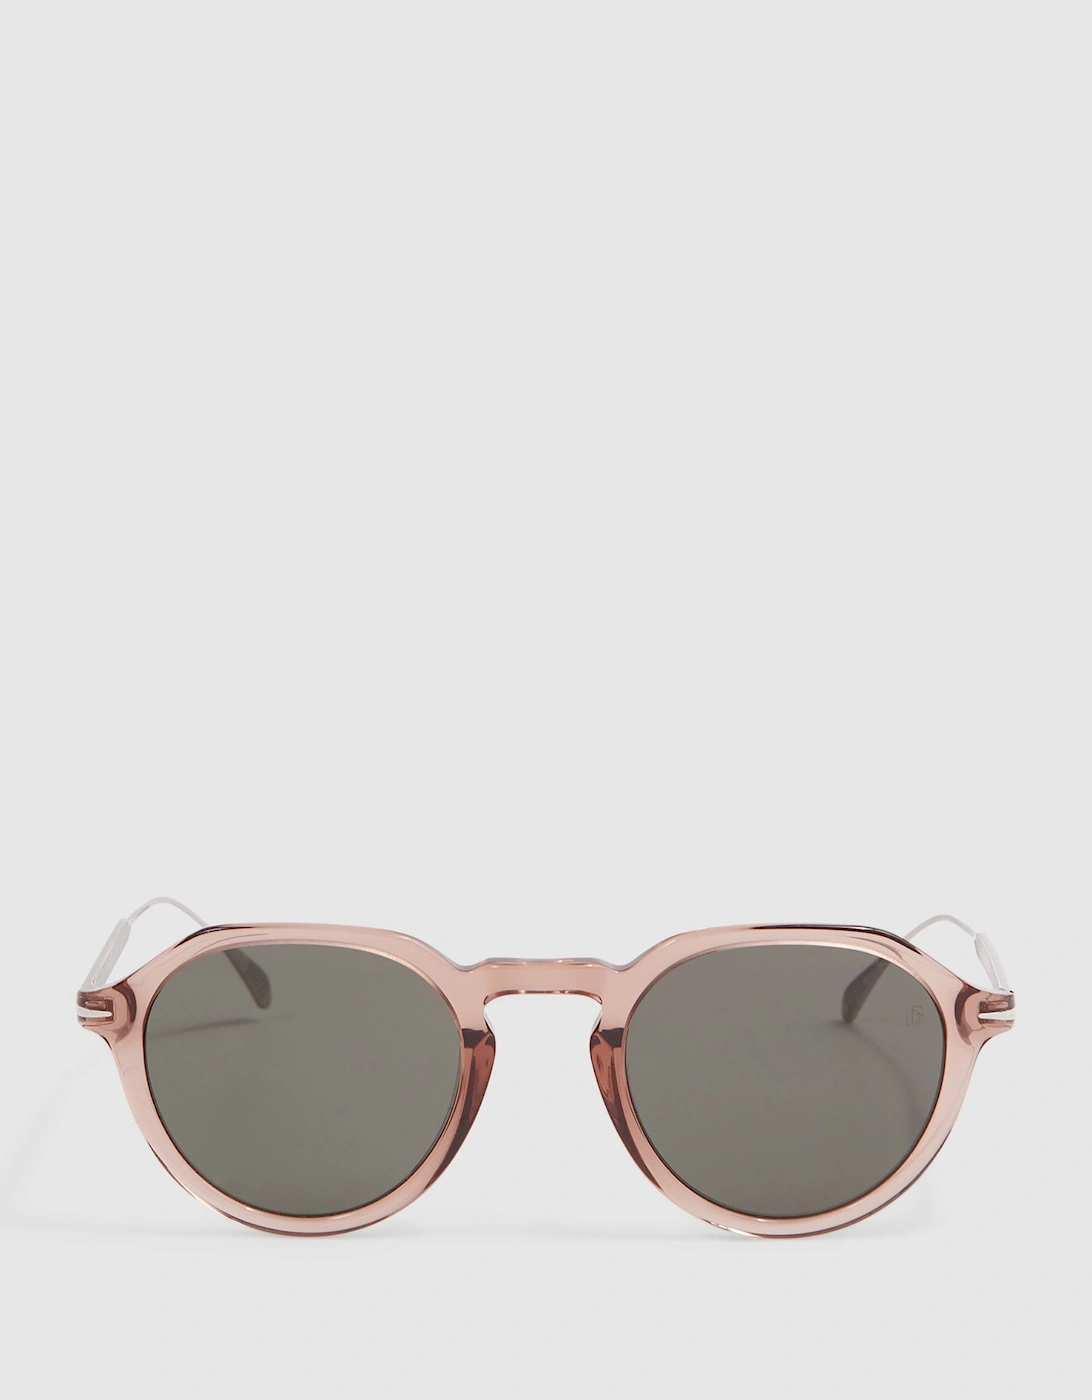 Eyewear by David Beckham Rounded Sunglasses, 2 of 1